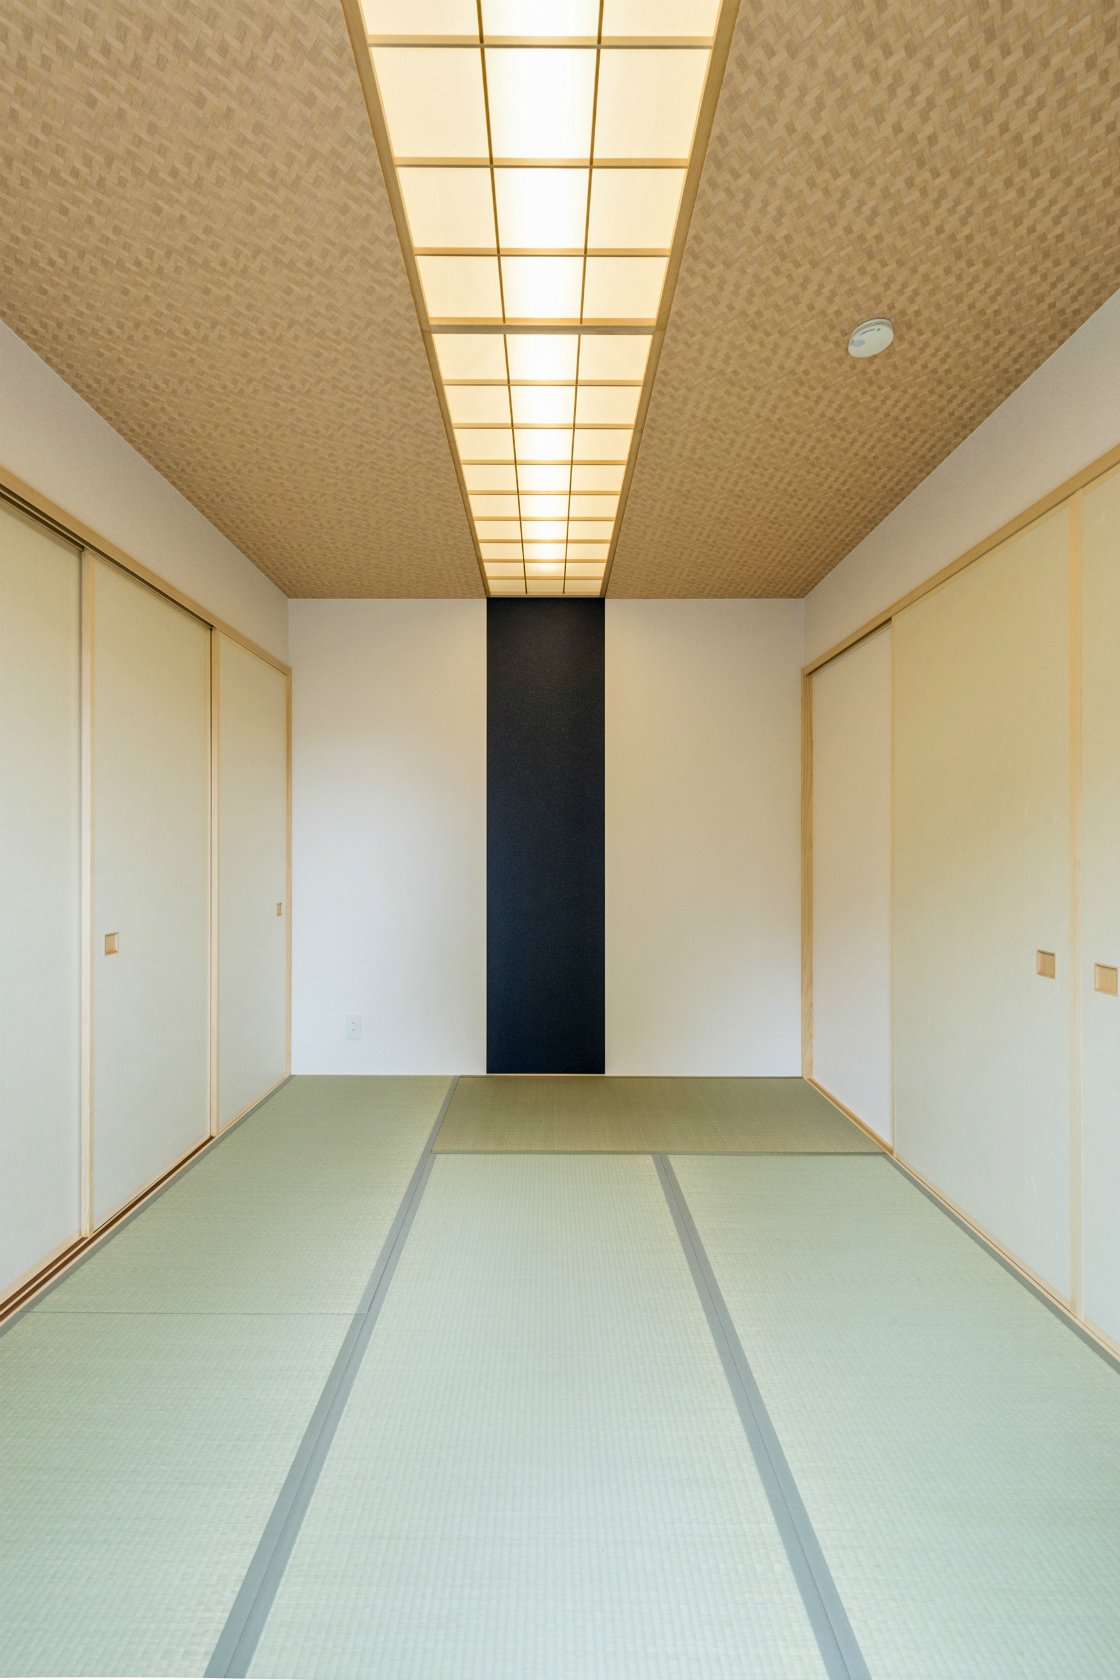 愛知県瀬戸市の平屋の新築注文住宅の中央にアクセントカラーのあるデザインの和室